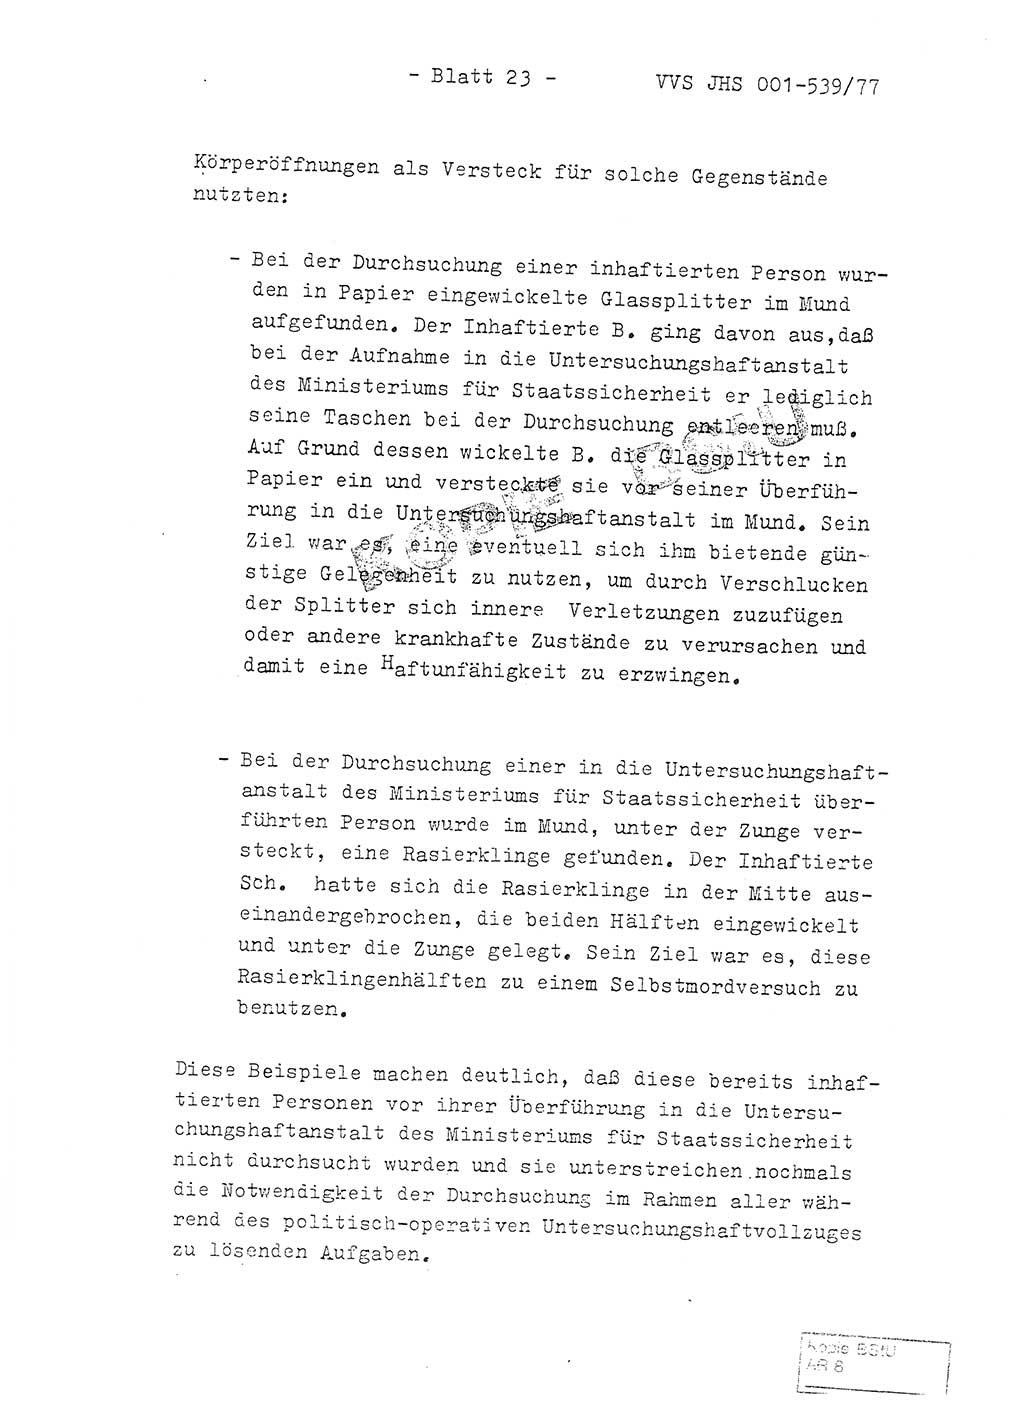 Fachschulabschlußarbeit Hauptmann Dietrich Jung (Abt. ⅩⅣ), Leutnant Klaus Klötzner (Abt. ⅩⅣ), Ministerium für Staatssicherheit (MfS) [Deutsche Demokratische Republik (DDR)], Juristische Hochschule (JHS), Vertrauliche Verschlußsache (VVS) 001-539/77, Potsdam 1978, Seite 23 (FS-Abschl.-Arb. MfS DDR JHS VVS 001-539/77 1978, S. 23)